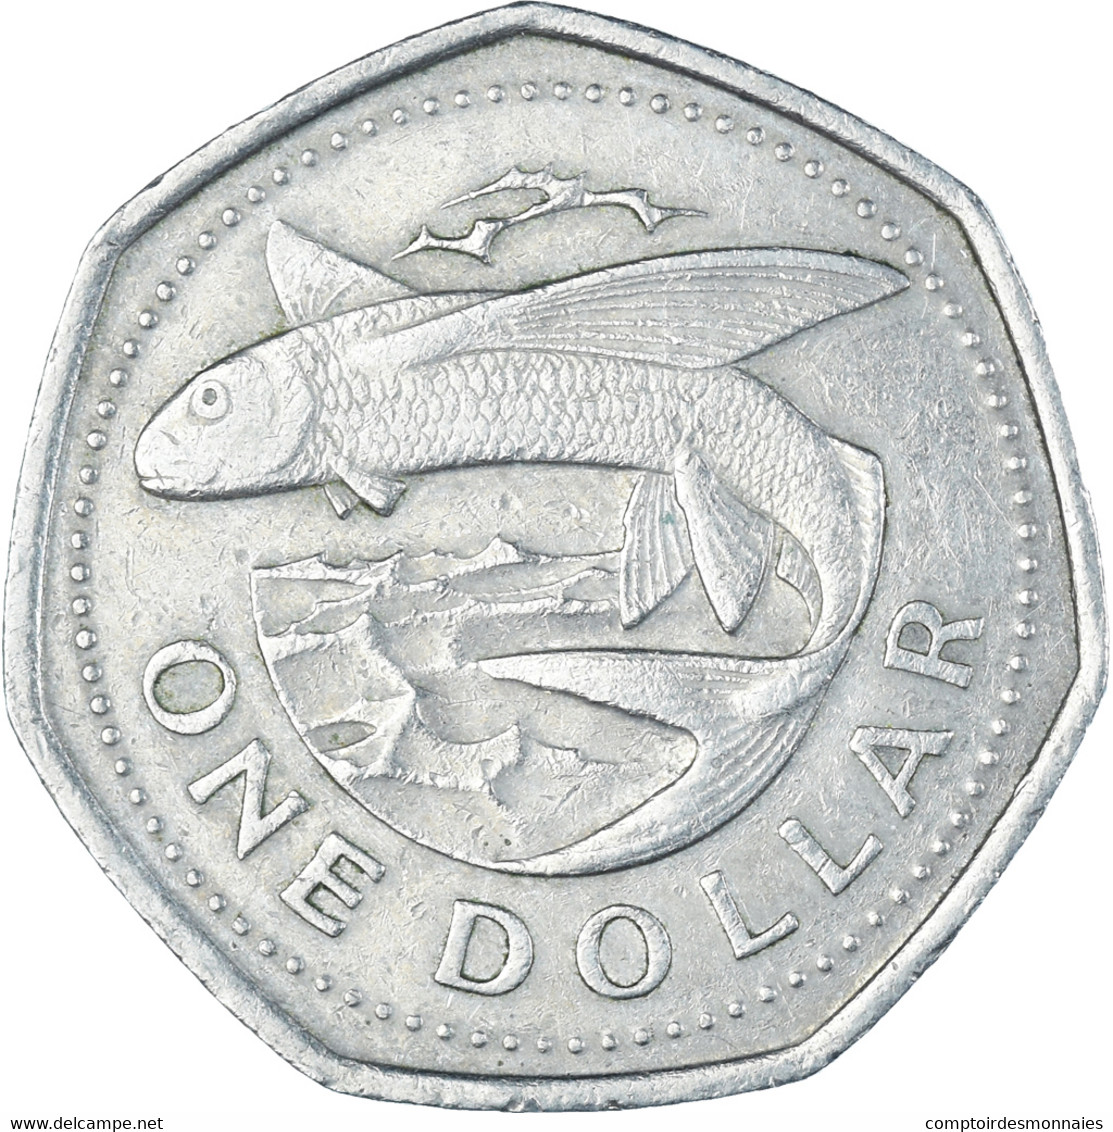 Monnaie, Barbade, Dollar, 1988 - Barbados (Barbuda)